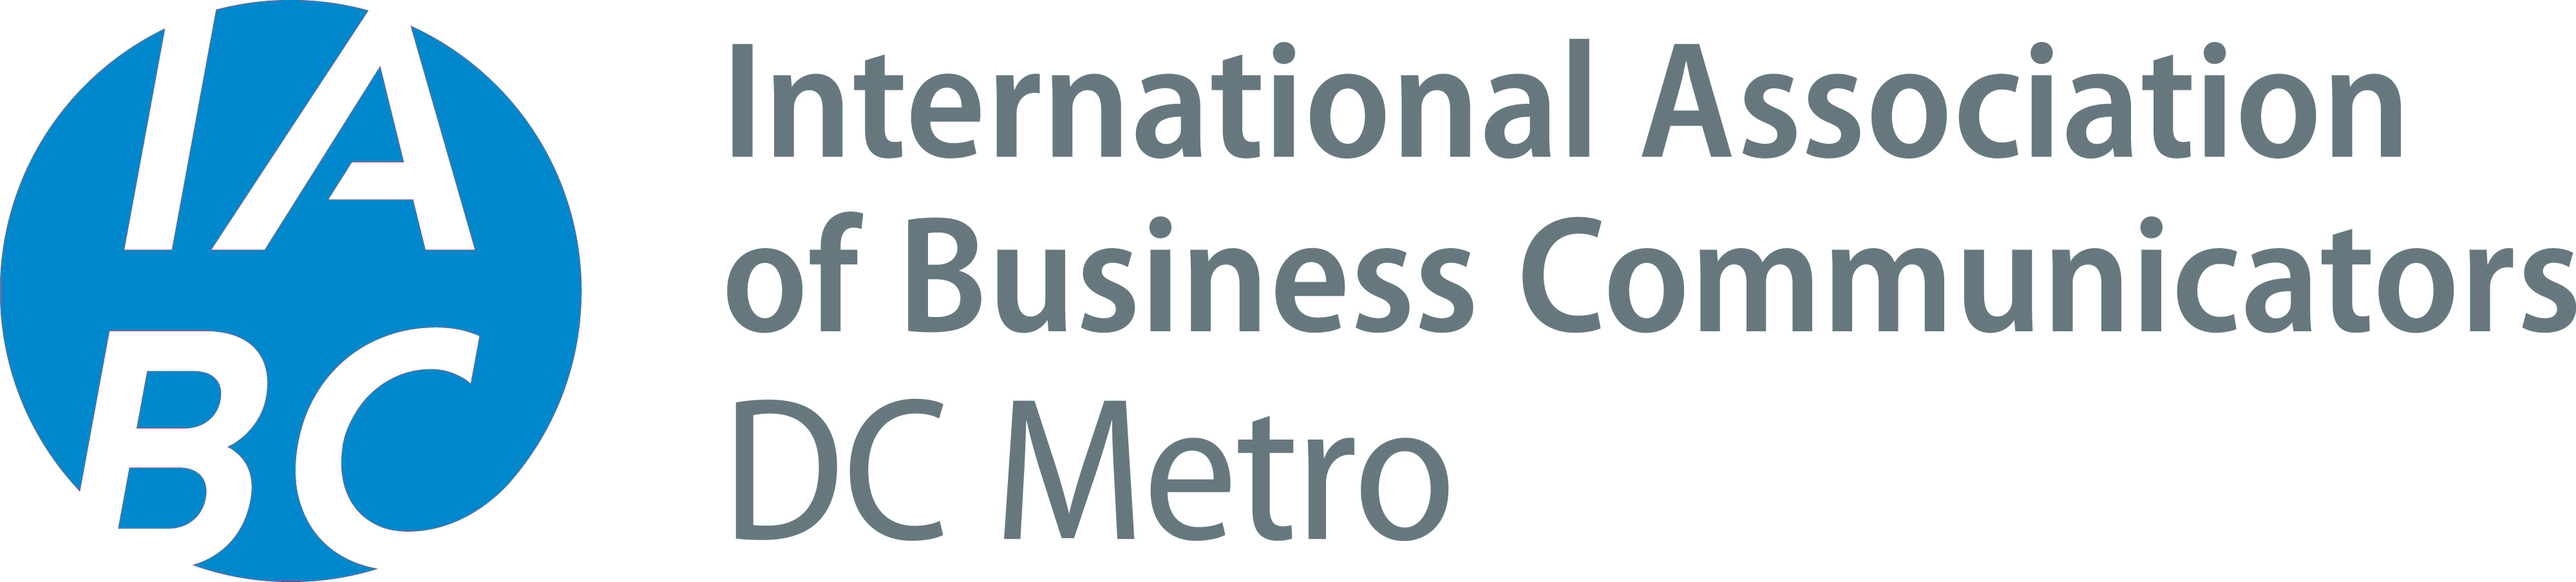 IABC-DC-Metro-logo